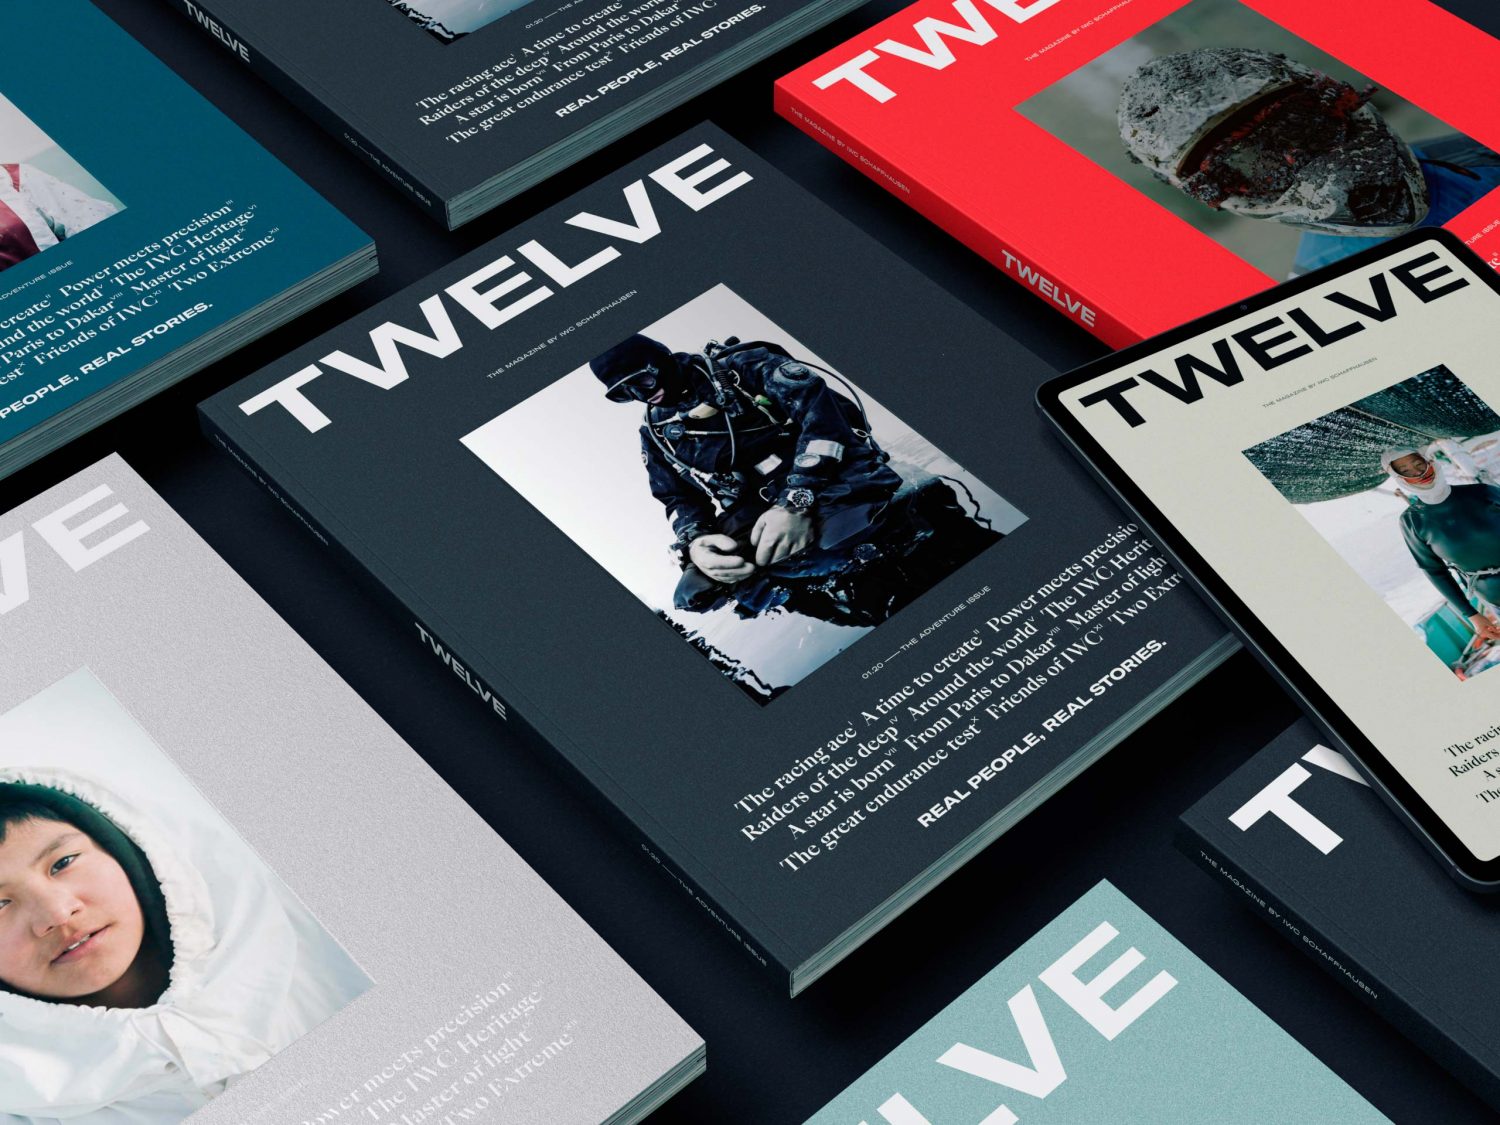 Twelve Magazine